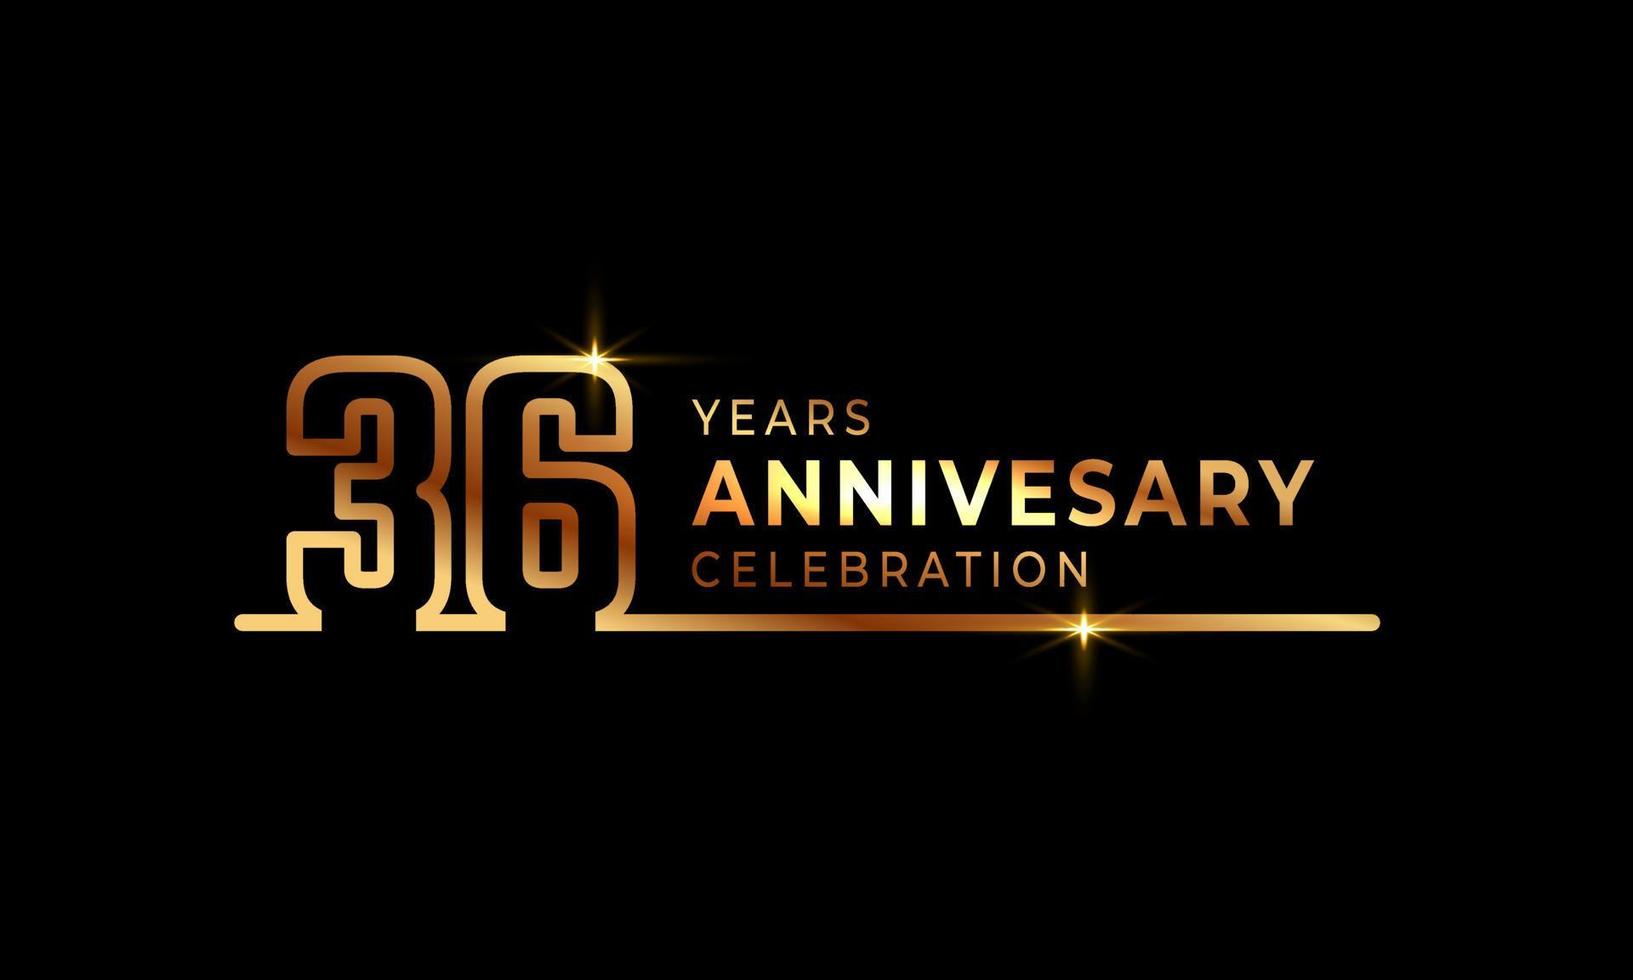 36-jarig jubileumviering logo met gouden gekleurde lettertypenummers gemaakt van één verbonden lijn voor feestgebeurtenis, bruiloft, wenskaart en uitnodiging geïsoleerd op donkere achtergrond vector